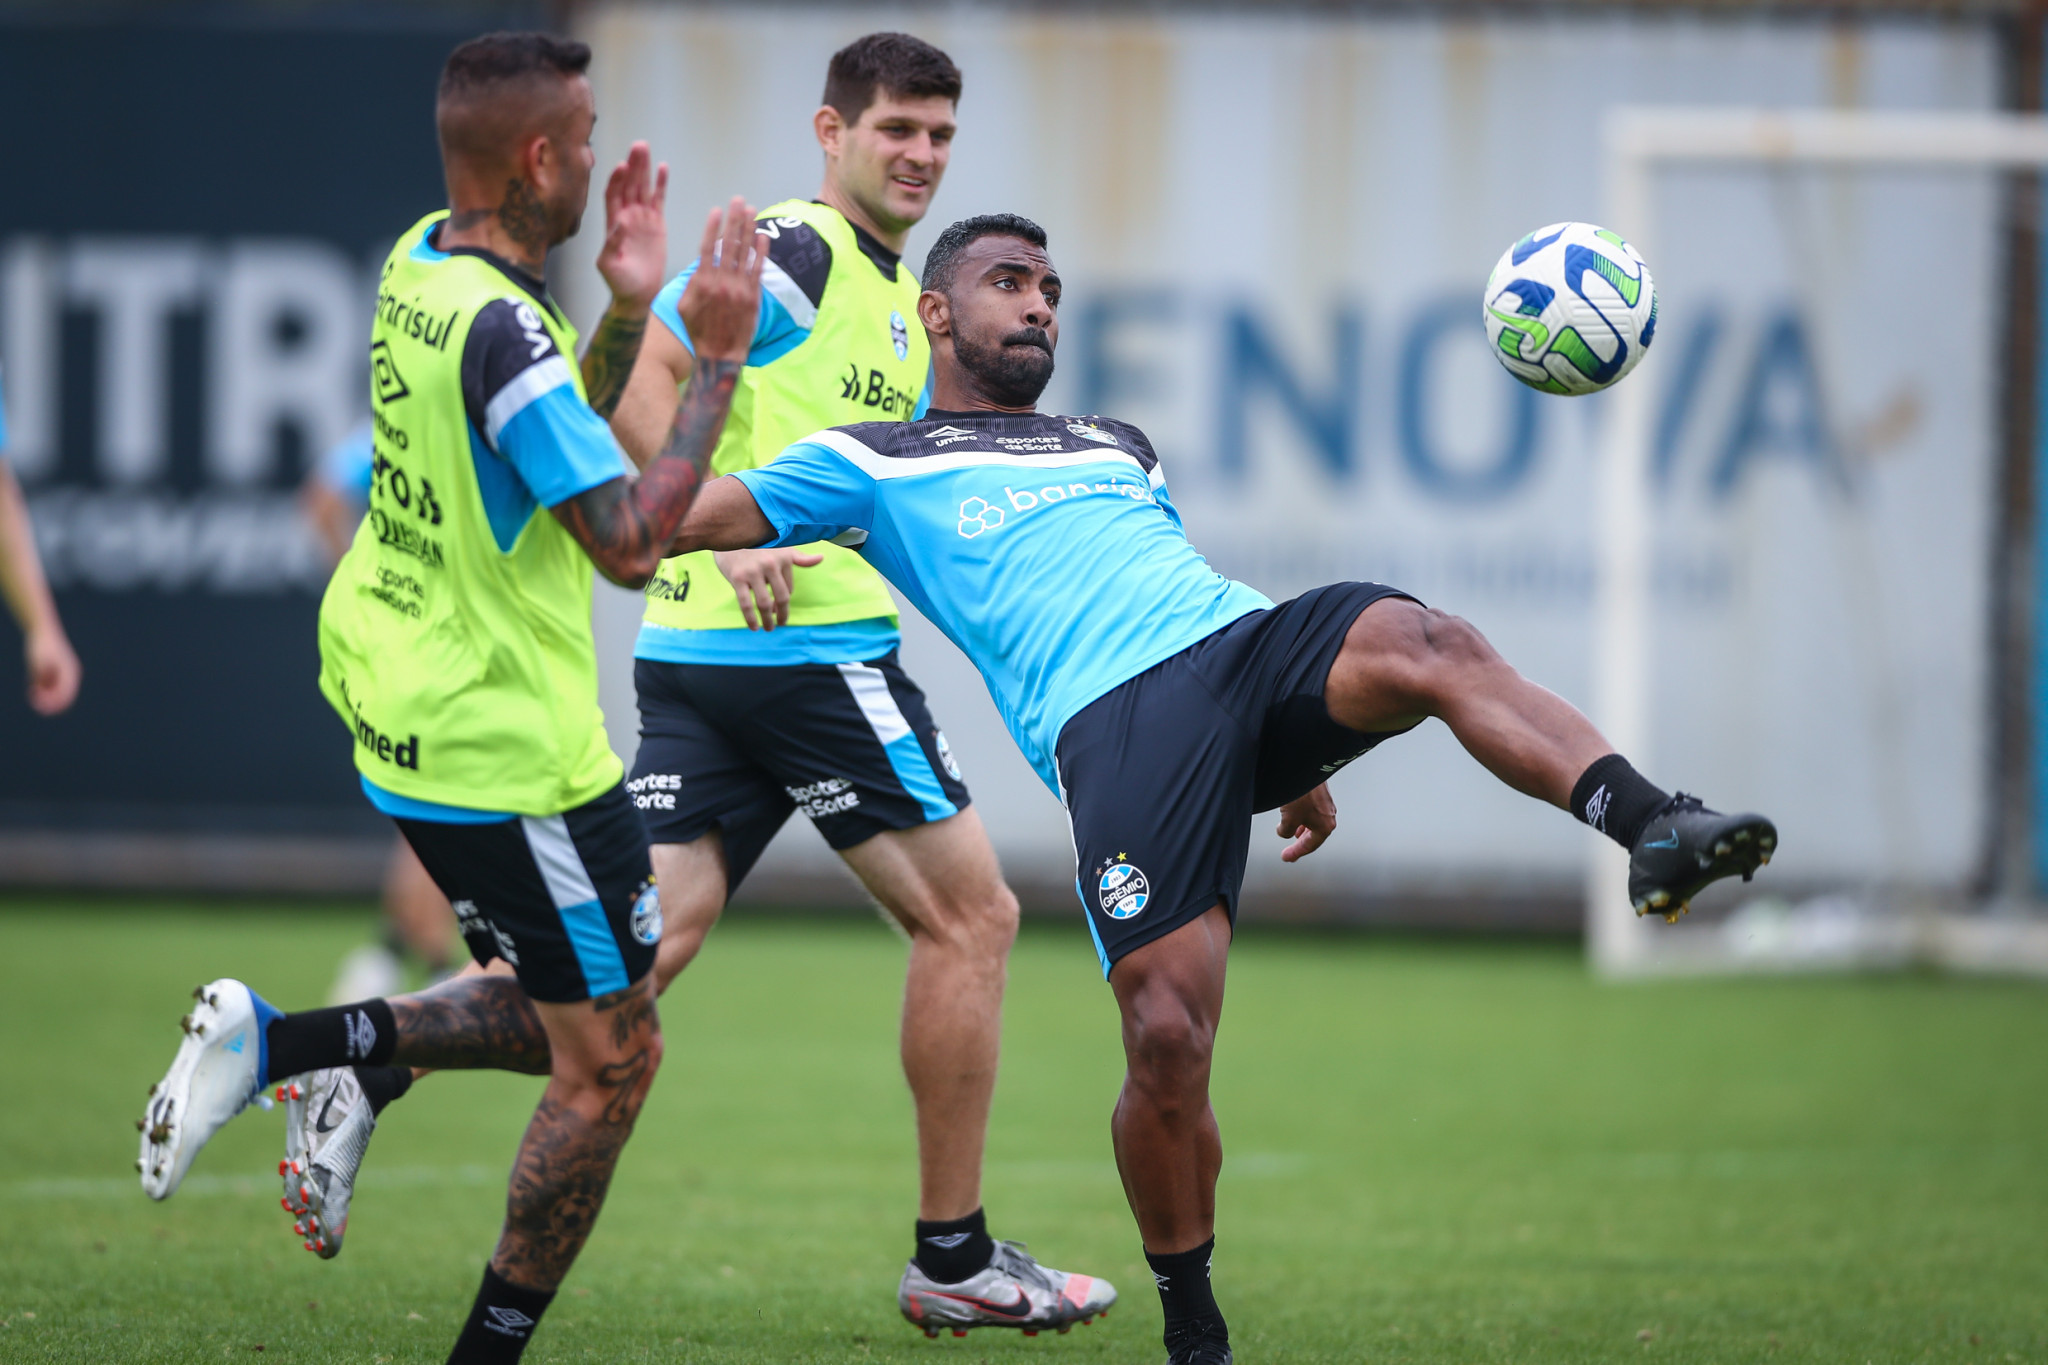 Grêmio pronto para jogo decisivo contra Botafogo no Rio de Janeiro